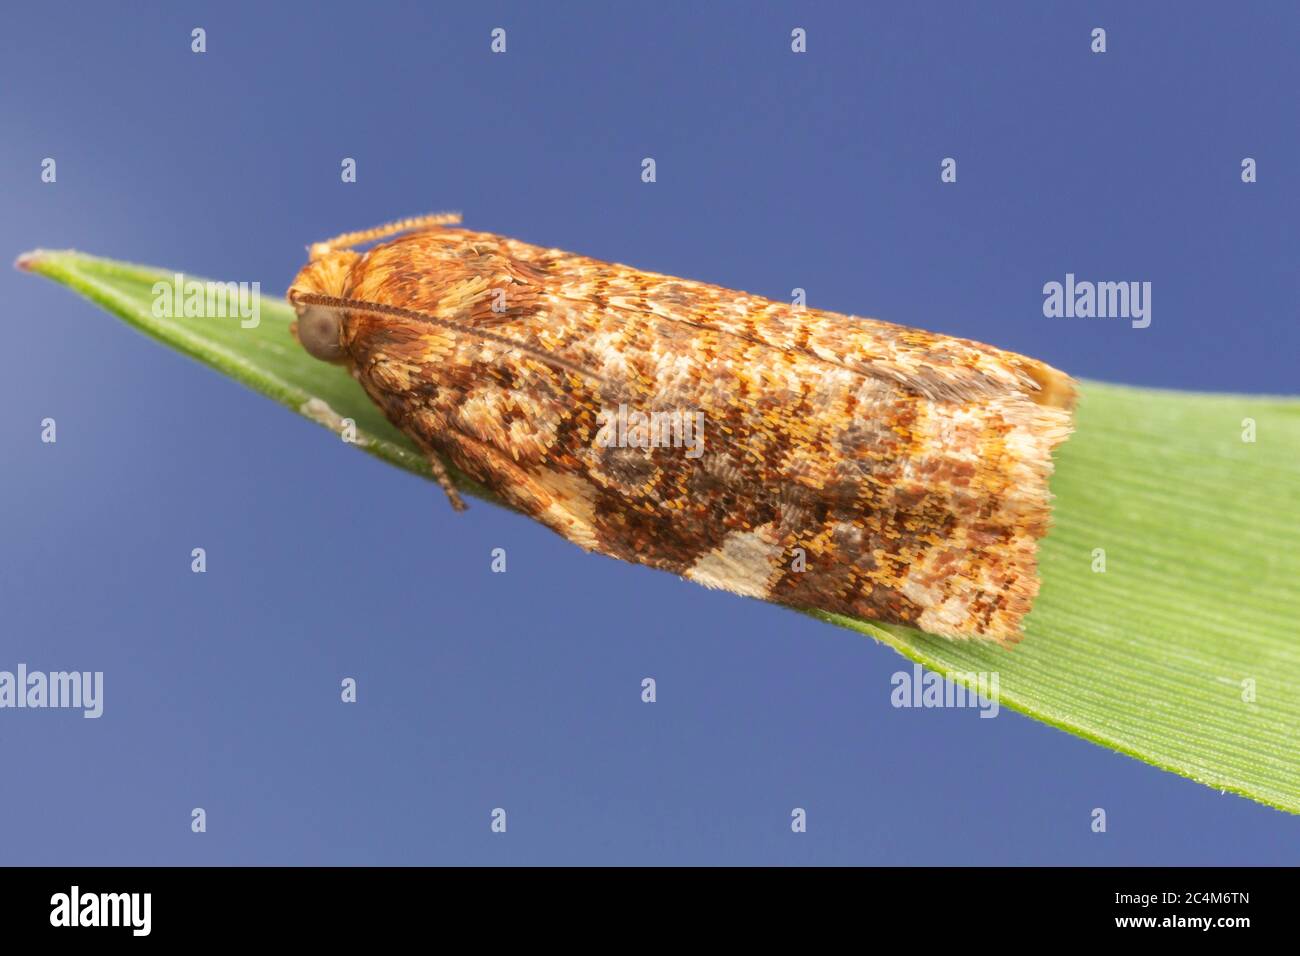 Fruit-tree Leafroller Moth (Archips argyrospila) Stock Photo